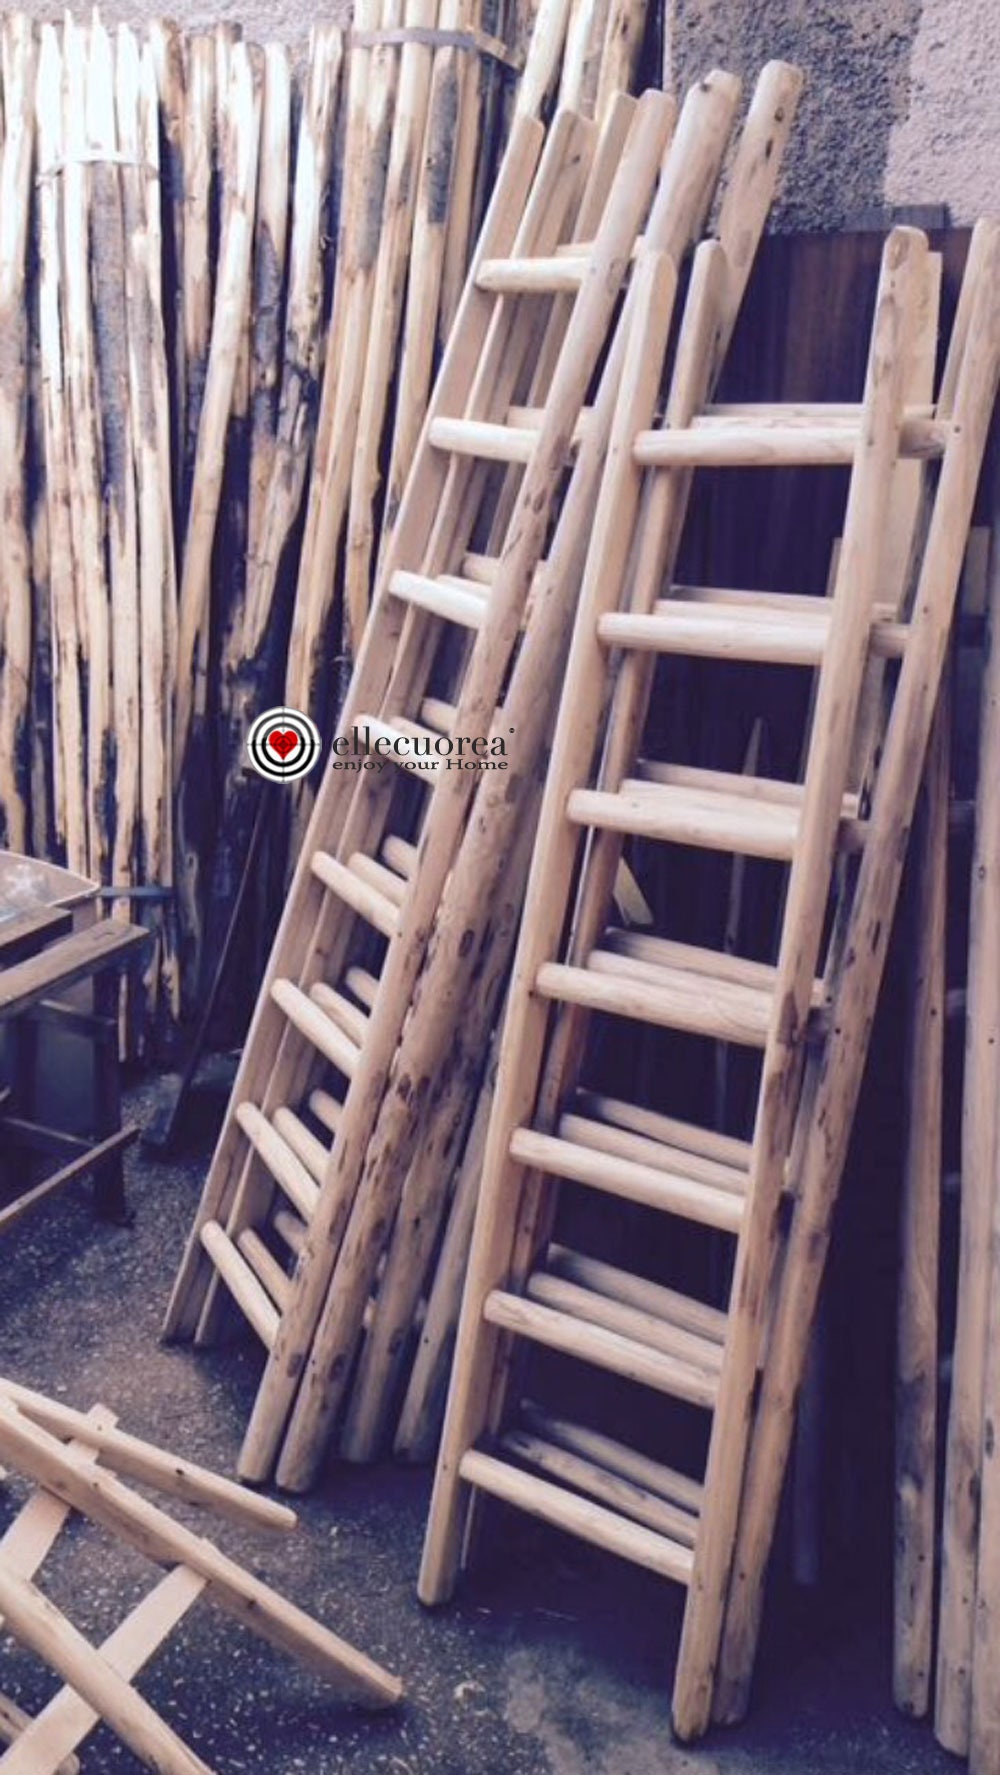  GAOYH Escalera de ropa, escalera de toalla de bambú, 4 rieles  de bambú, escalera de ropa con ganchos de latón y pies antideslizantes,  toallero decorativo de bambú : Todo lo demás